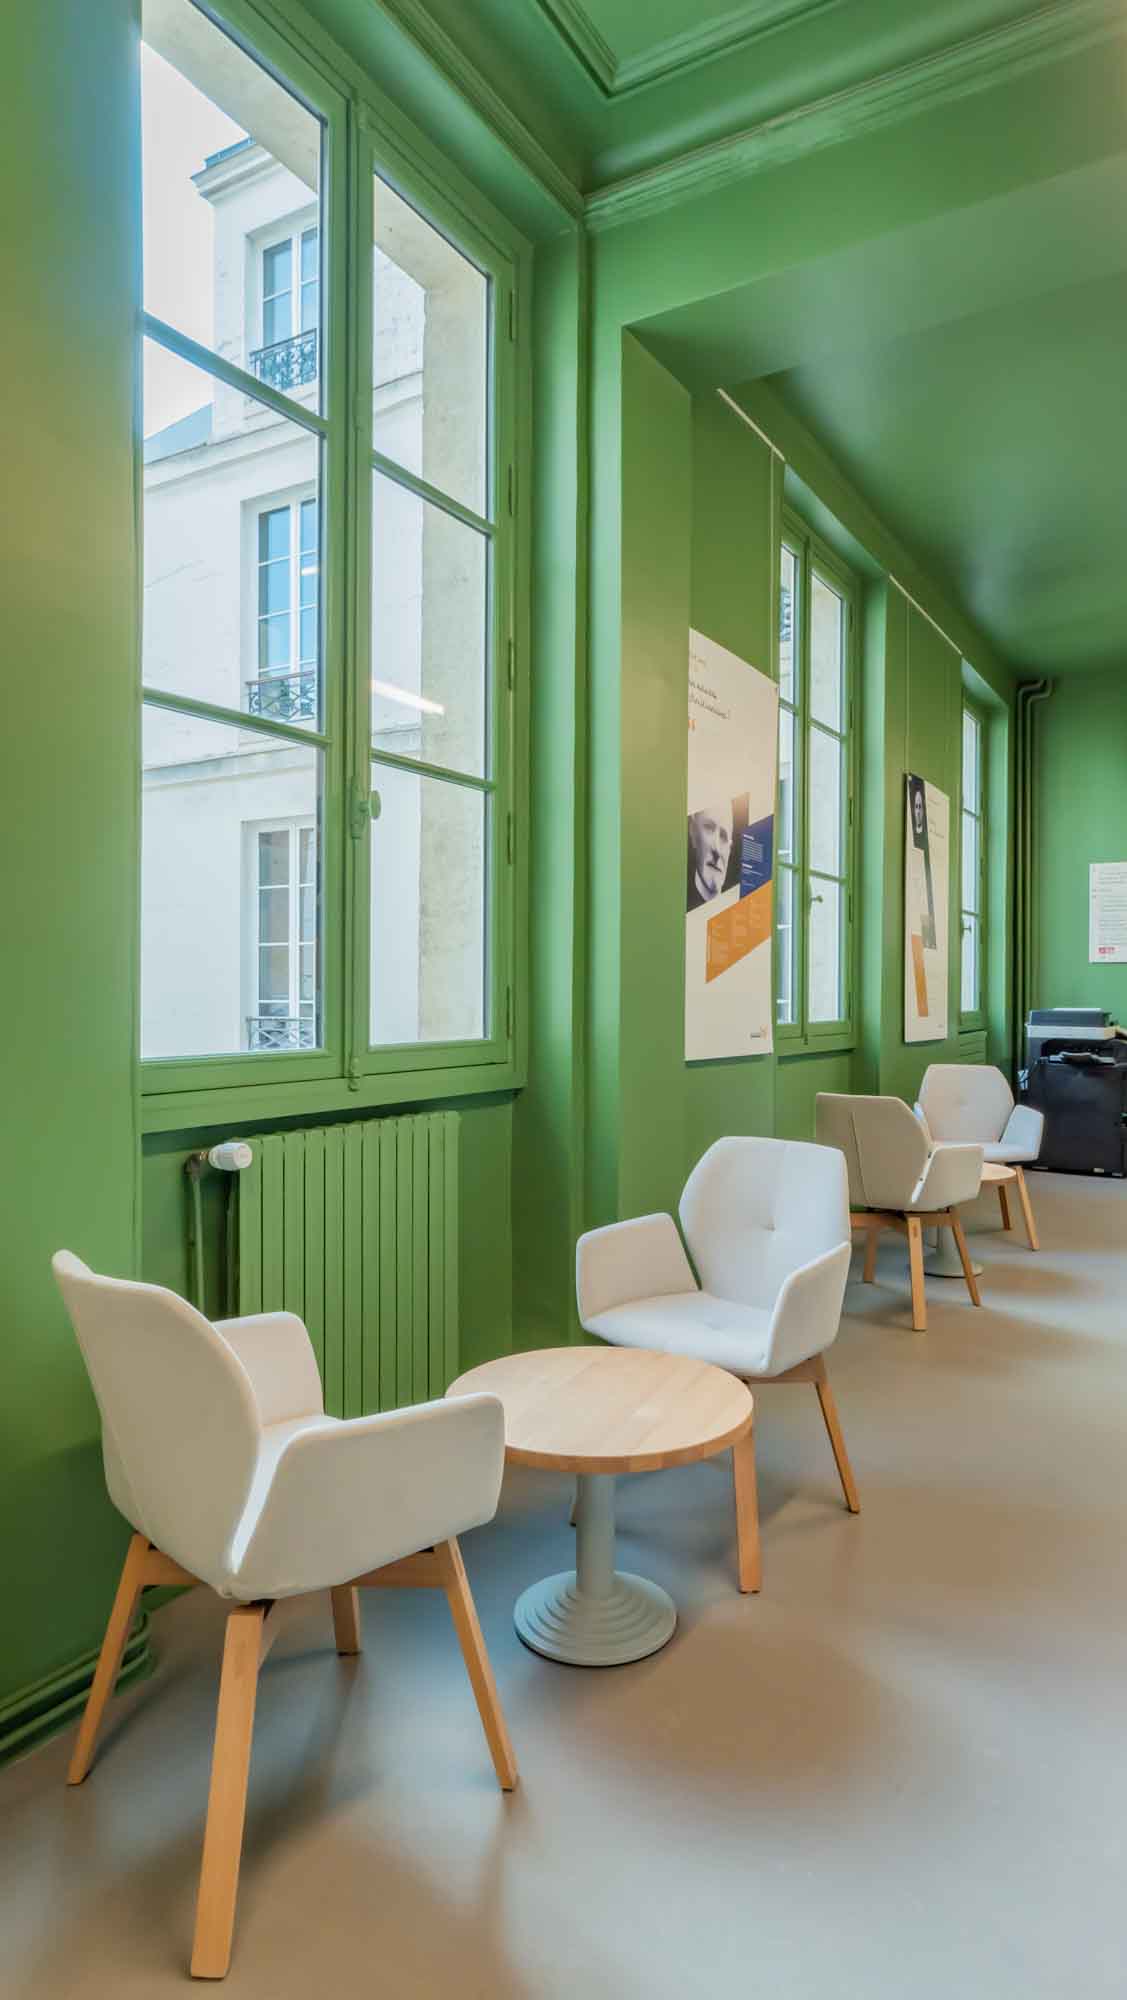 Salle d'attente de l'Institut Catholique de Paris, des petites tables et fauteuils dans une pièce verte et lumineuse.